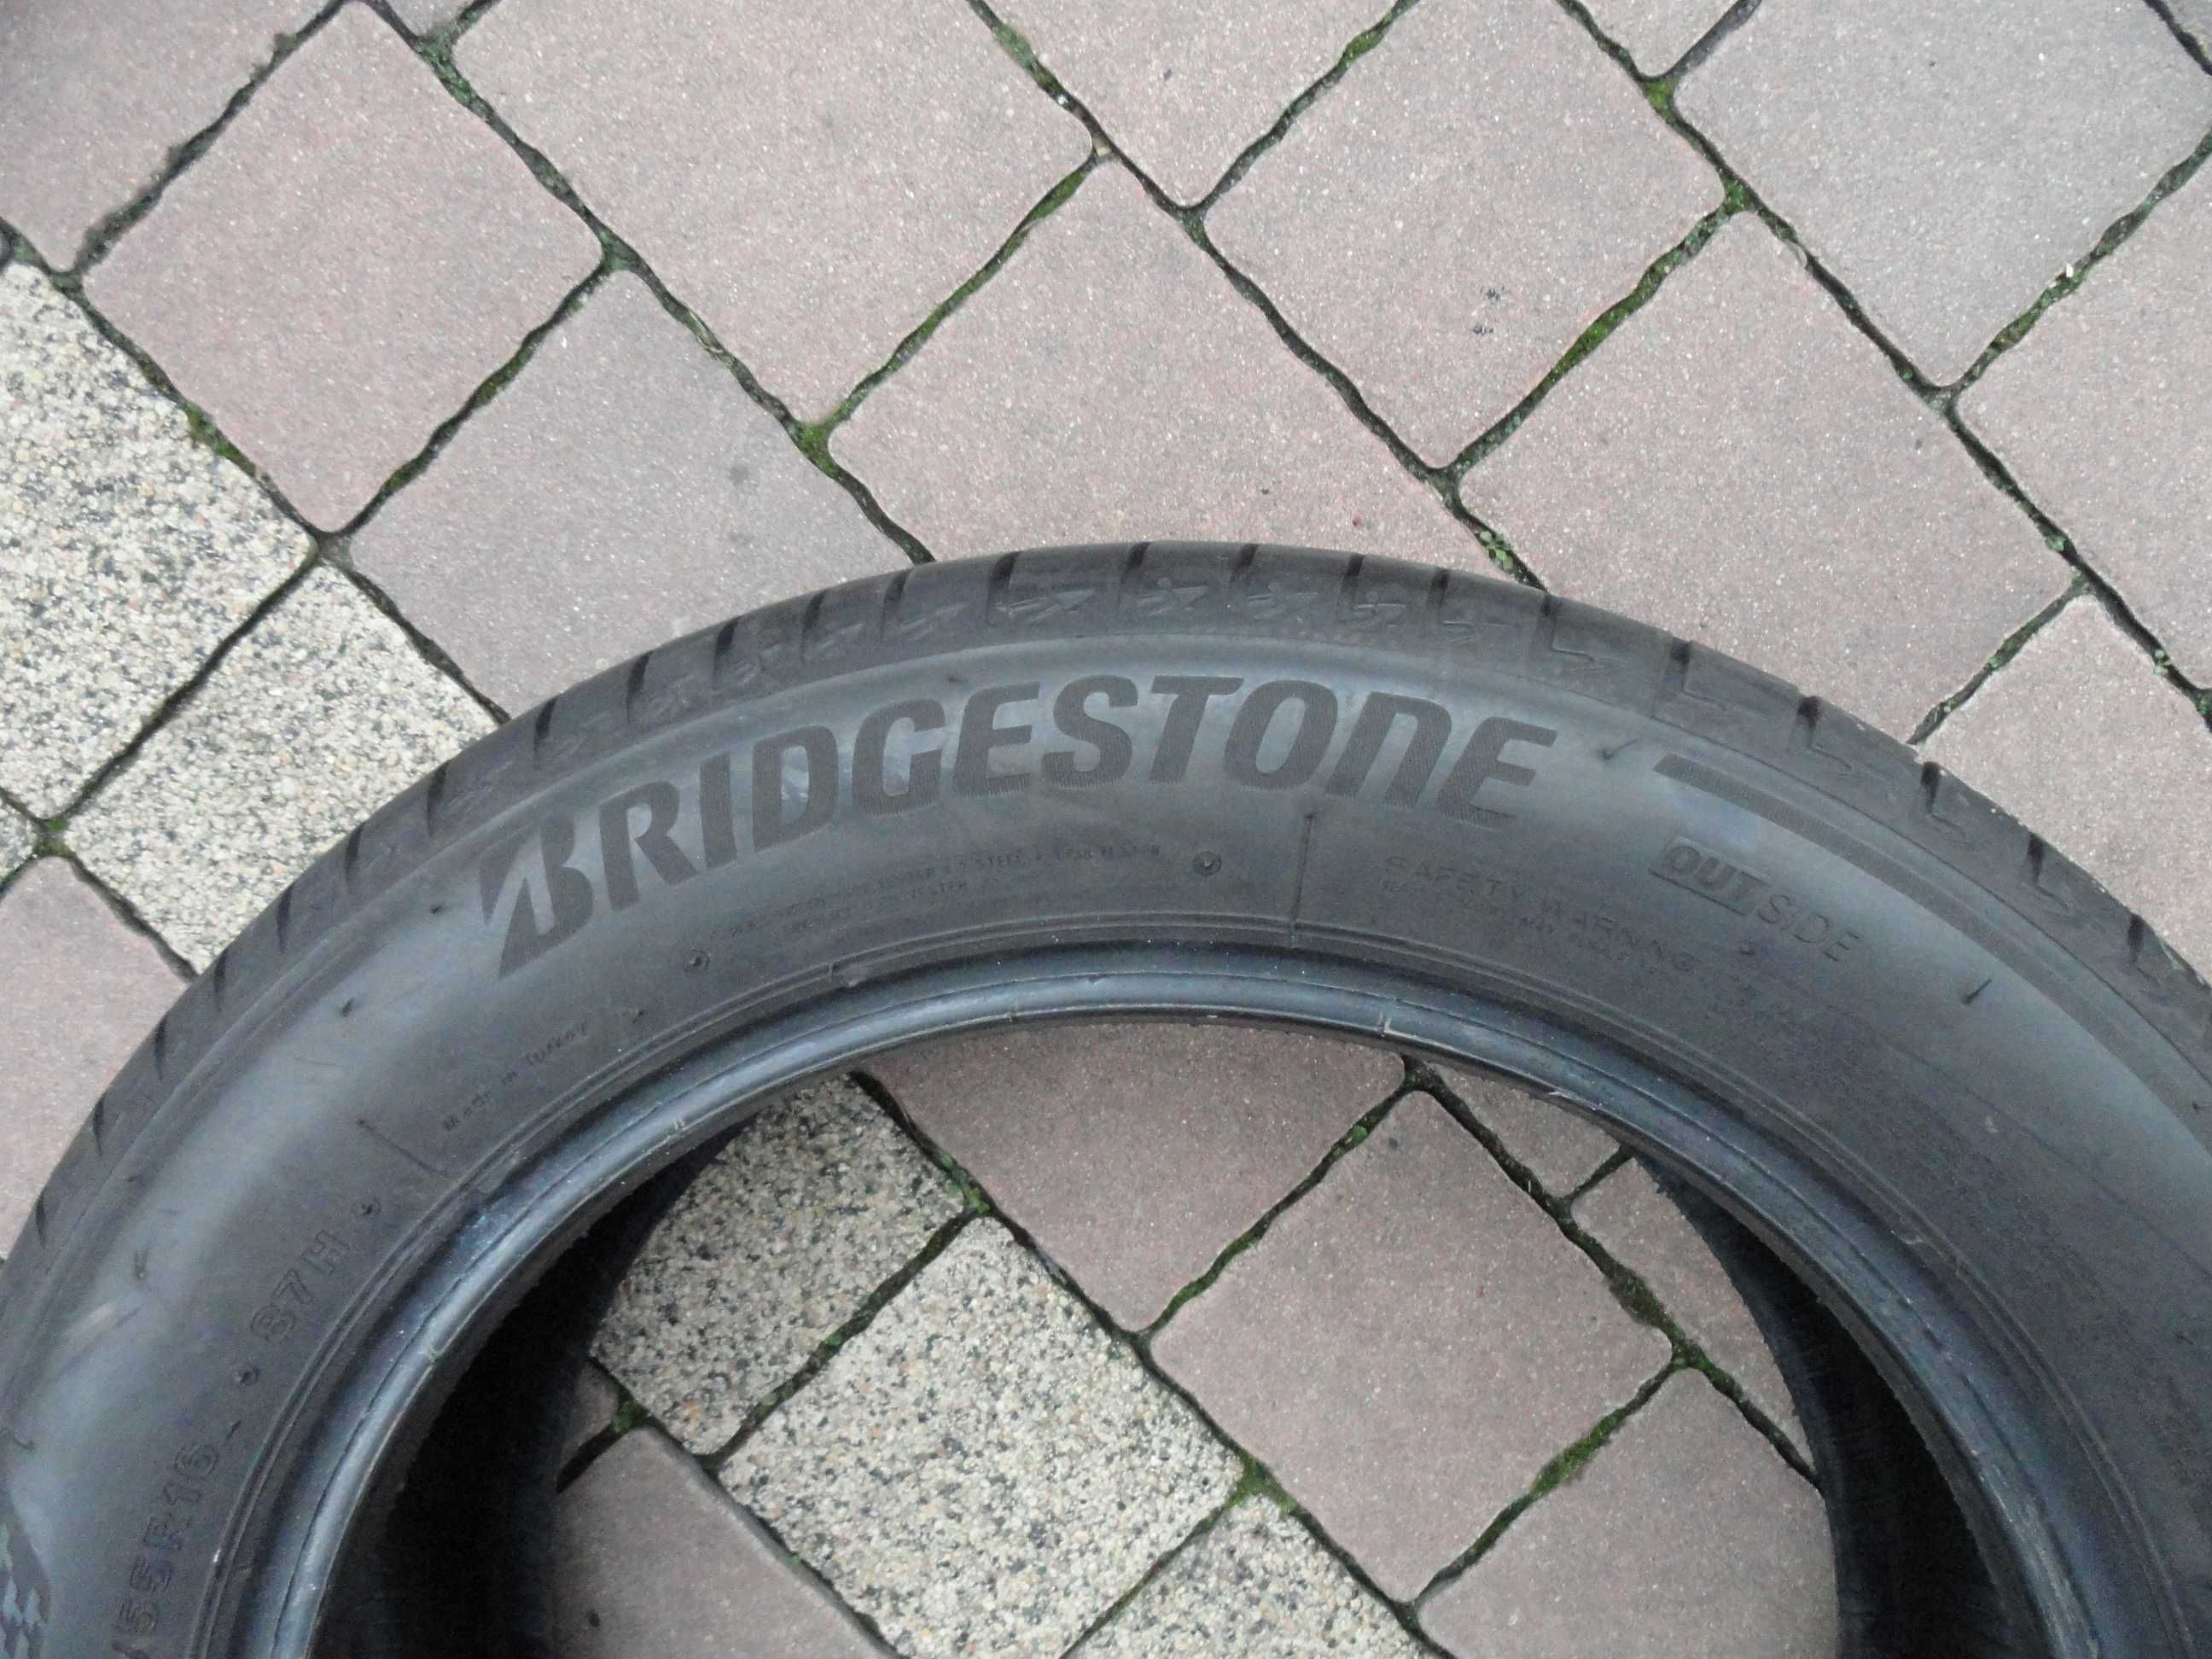 195/55R16 Bridgestone Komplet 4 sztuki LATO 2020 rok